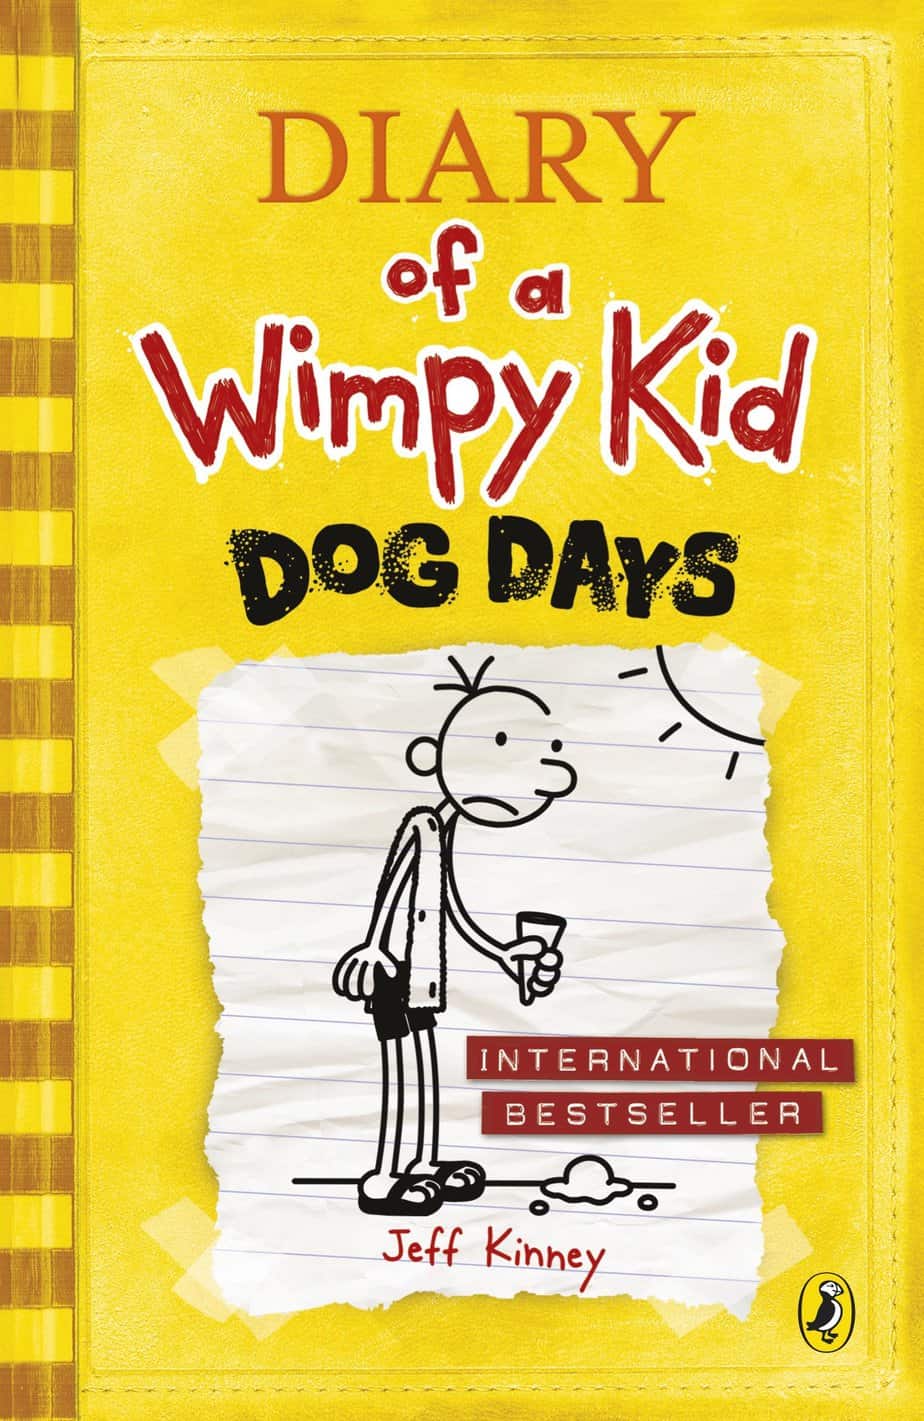 Dog Days by Jeff Kinney Middle Grade Novel Analysis